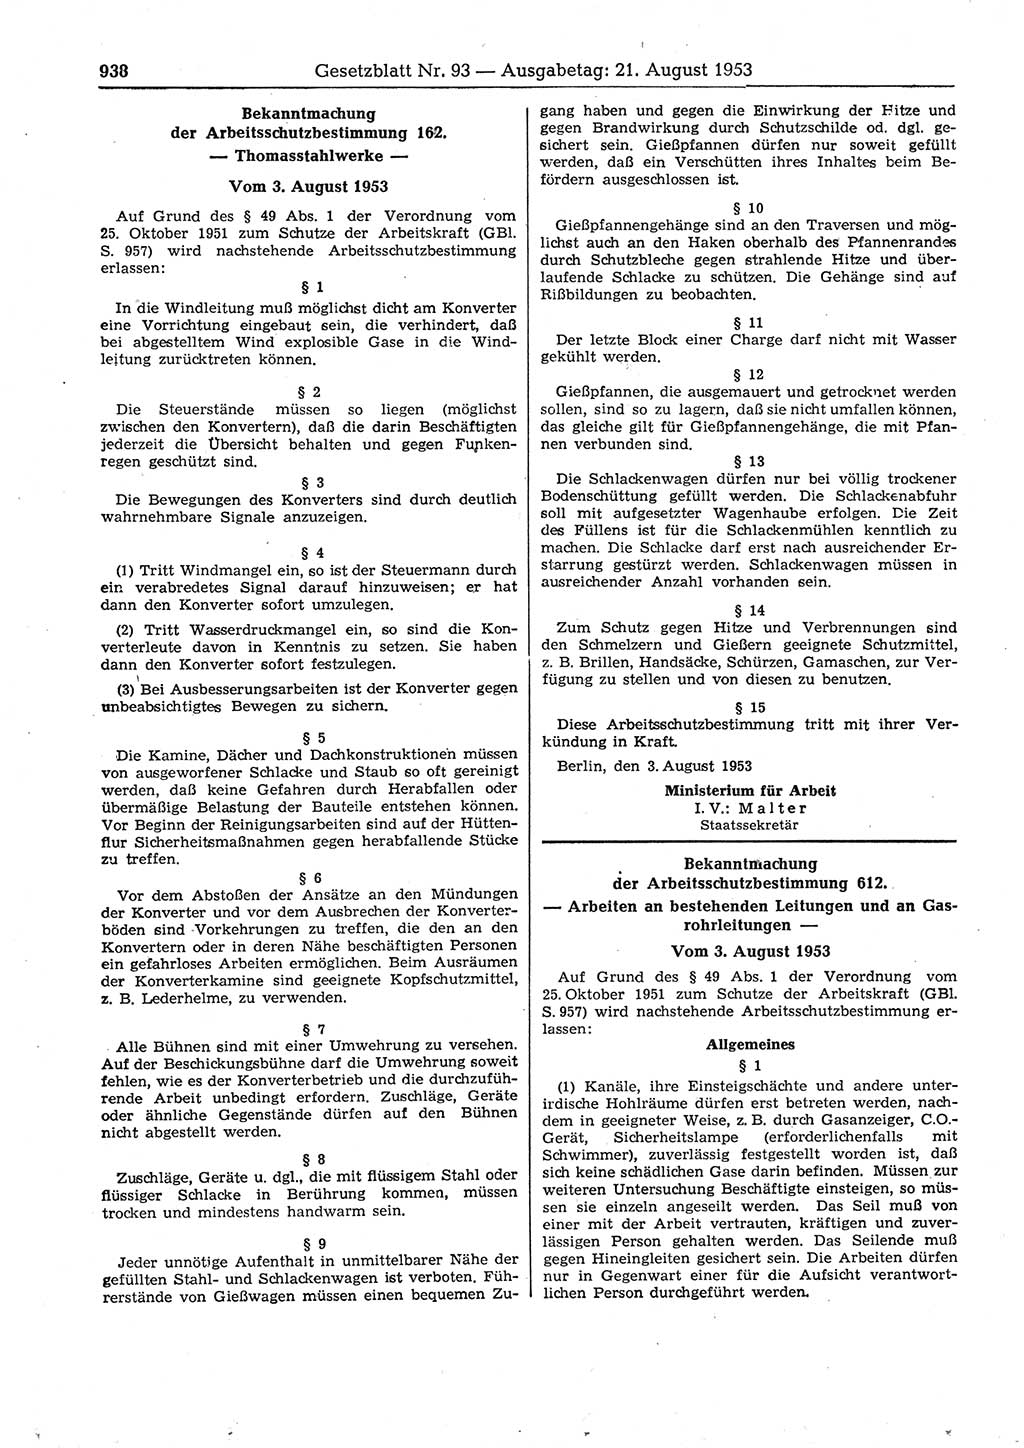 Gesetzblatt (GBl.) der Deutschen Demokratischen Republik (DDR) 1953, Seite 938 (GBl. DDR 1953, S. 938)